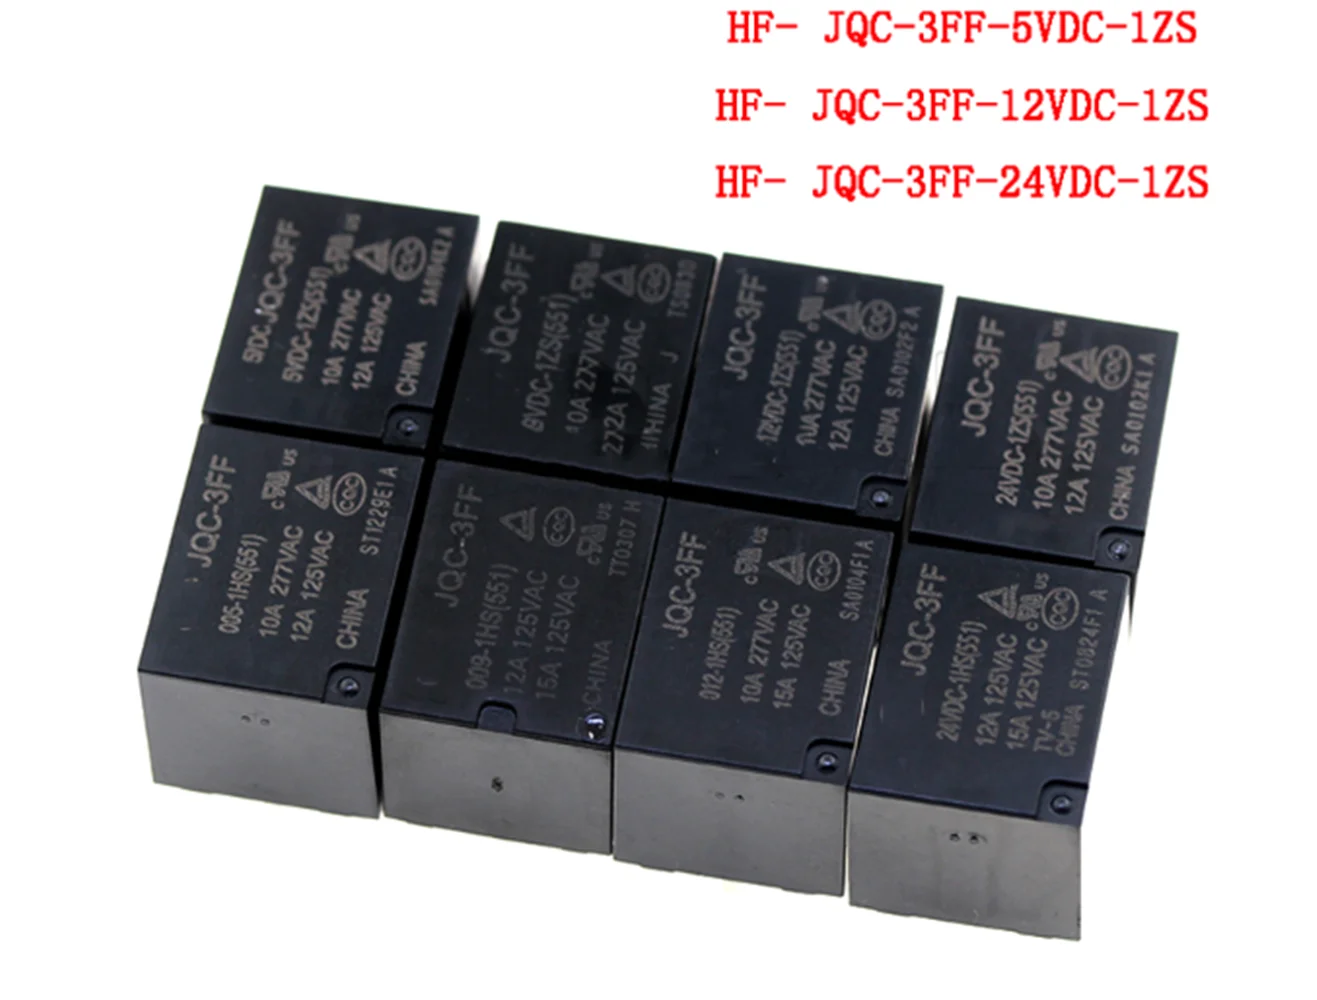 

5pcs HF- JQC- 10A Relay HF3FF - JQC - 3FF - 5VDC - 1ZS 12VDC -1ZS 24VDC-1ZS(551) 5Pin DIP5 HF- JQC-3FF - 5V 9V 12V 24V DC Relays